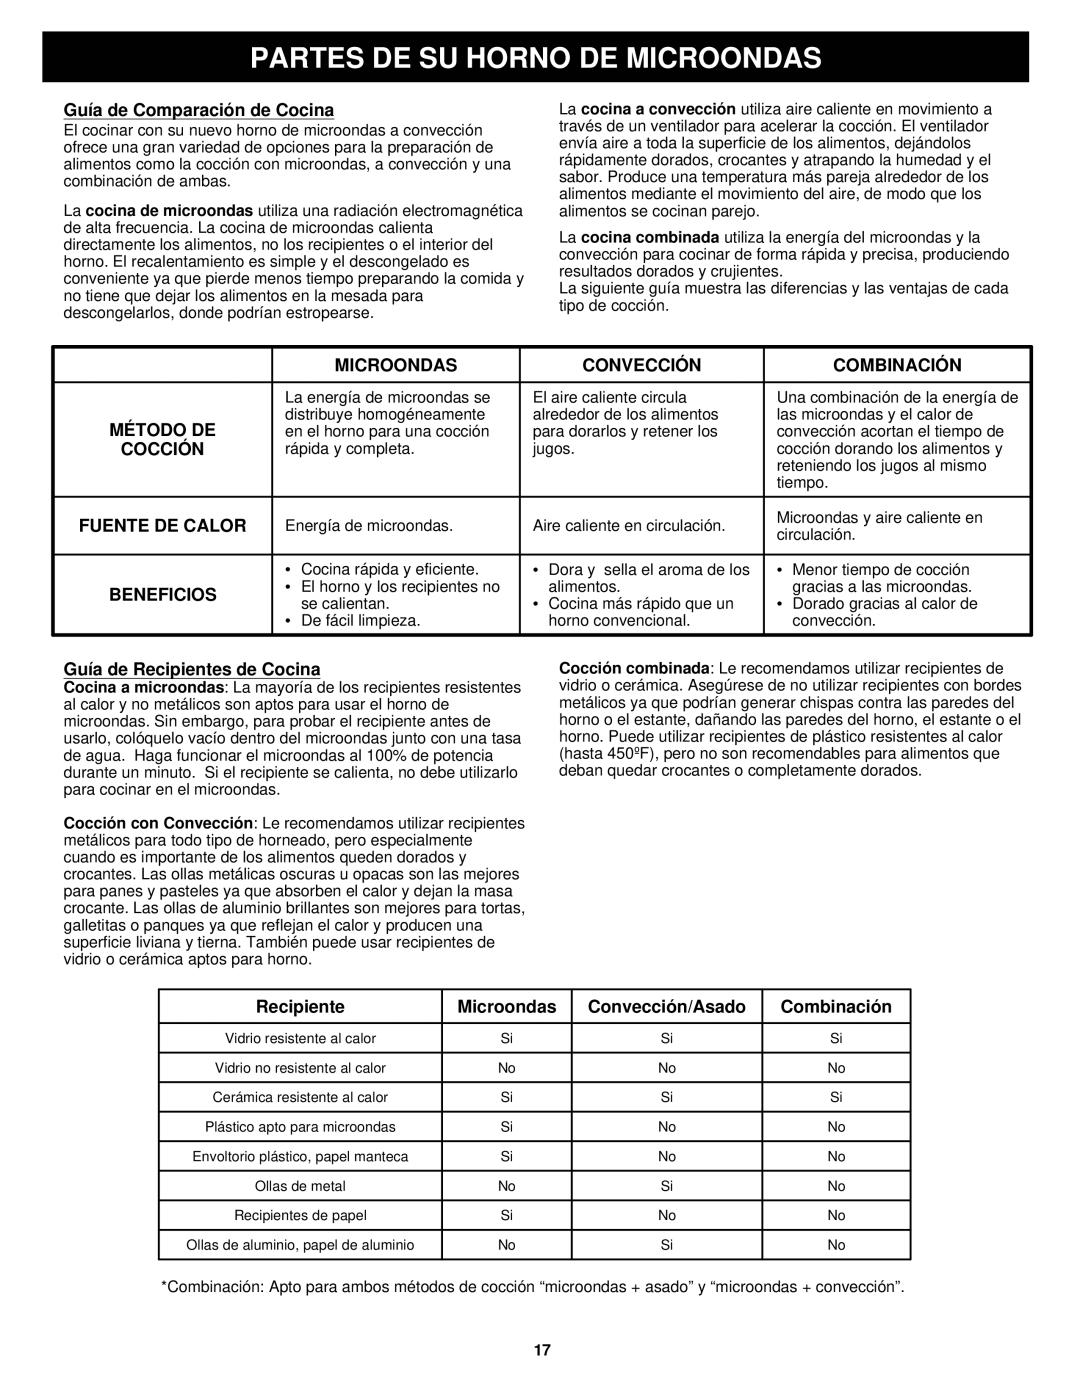 Euro-Pro K5345B owner manual Partes De Su Horno De Microondas, Guía de Comparación de Cocina 